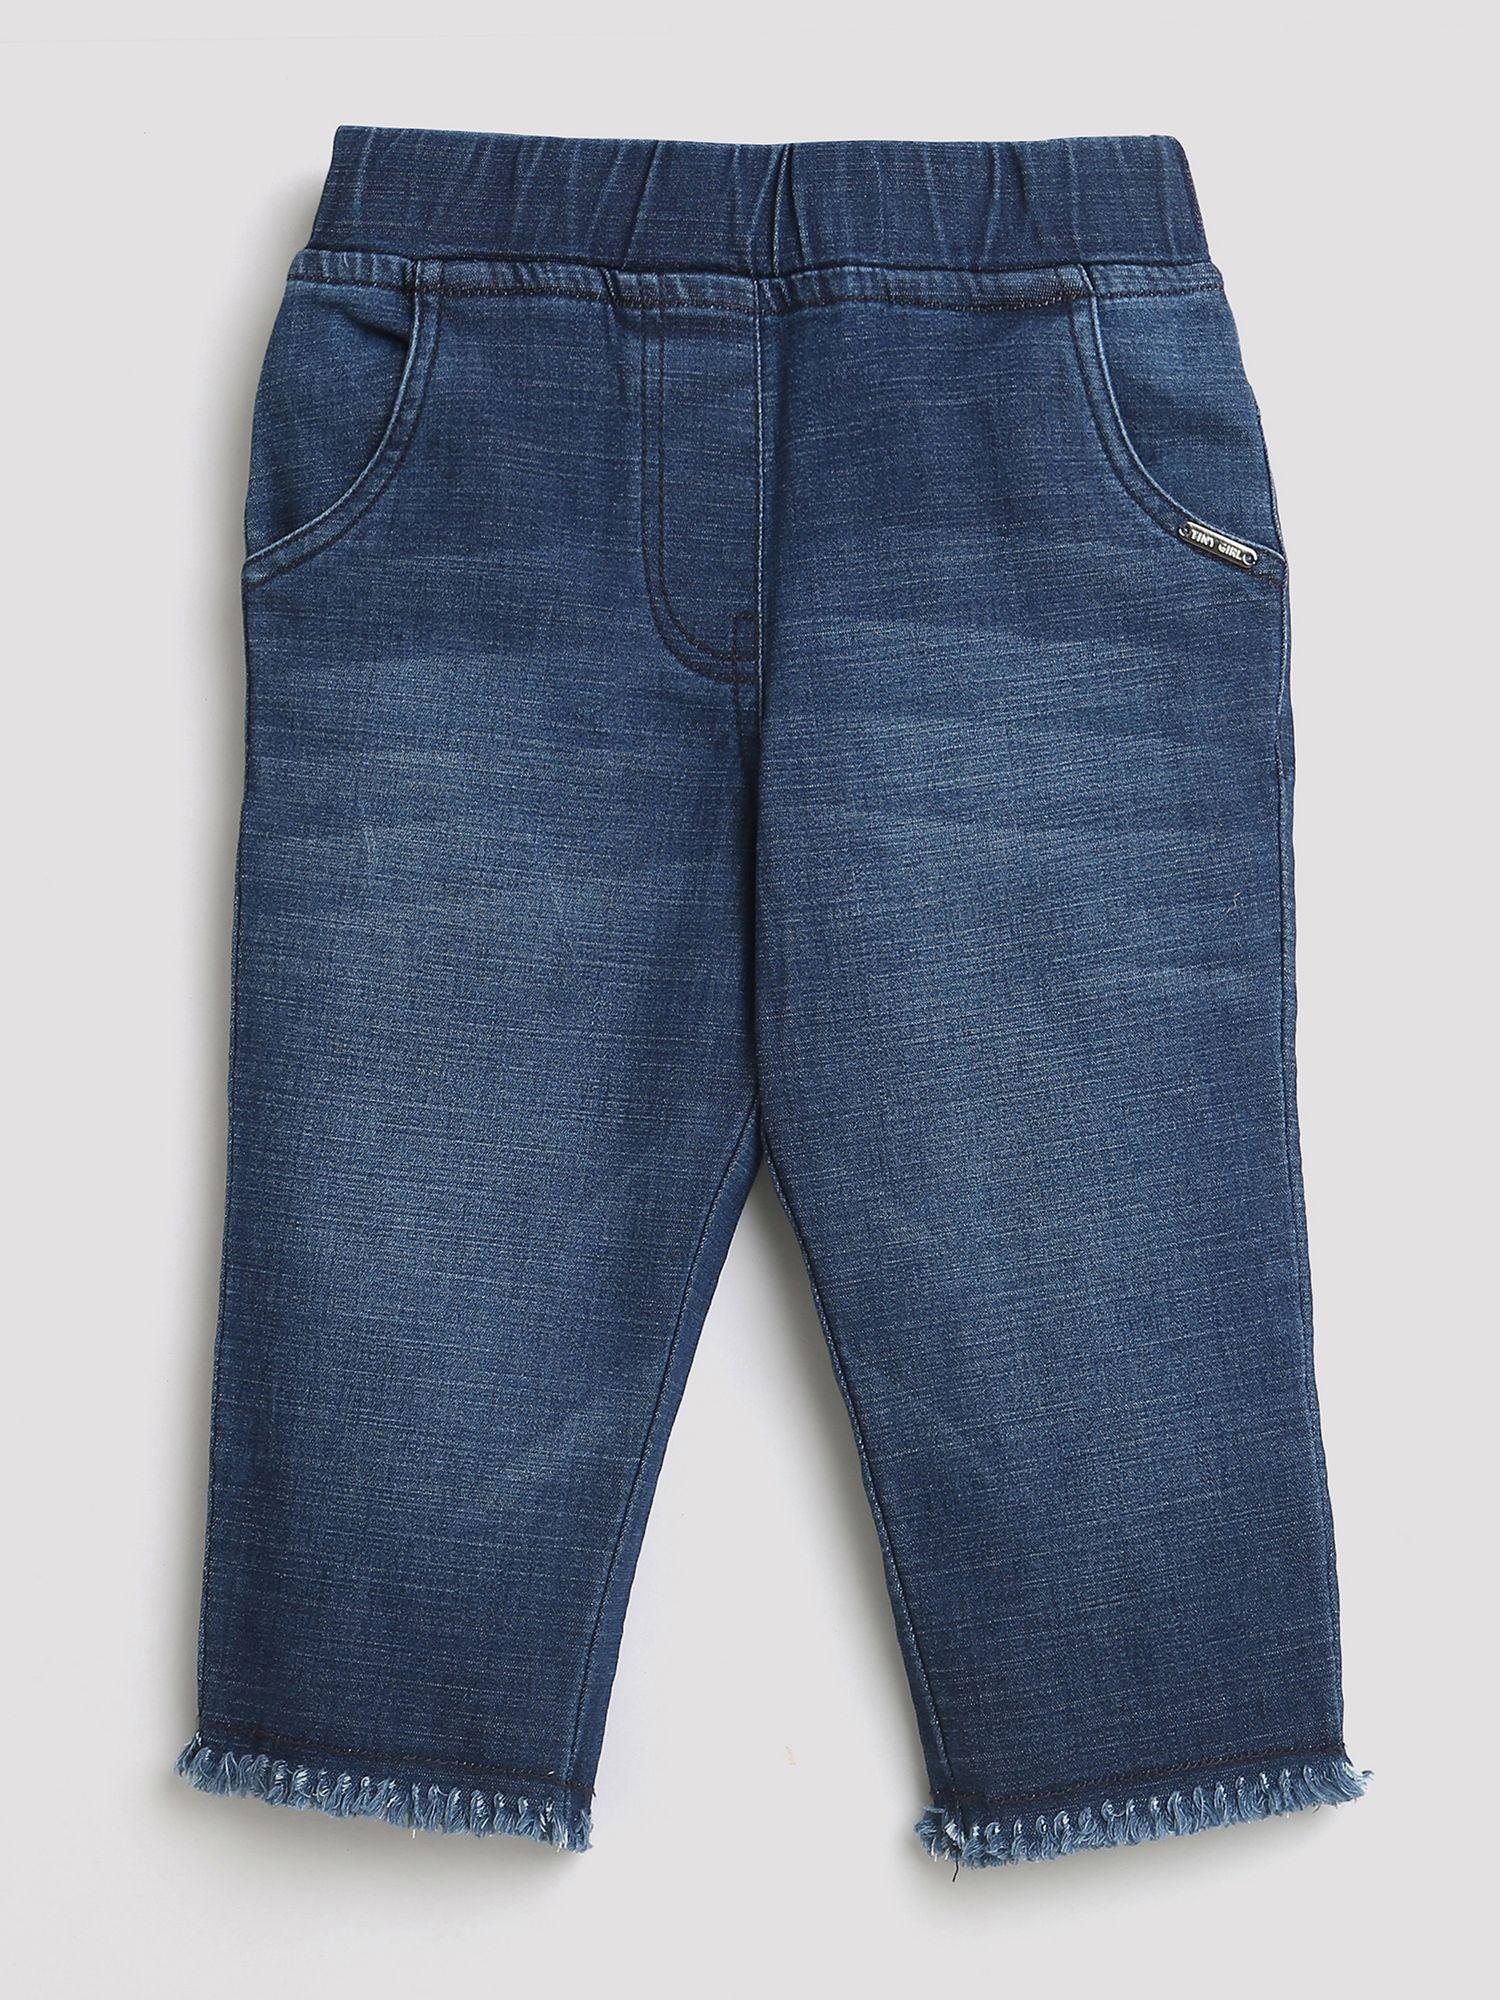 washed denim jeans - dark blue